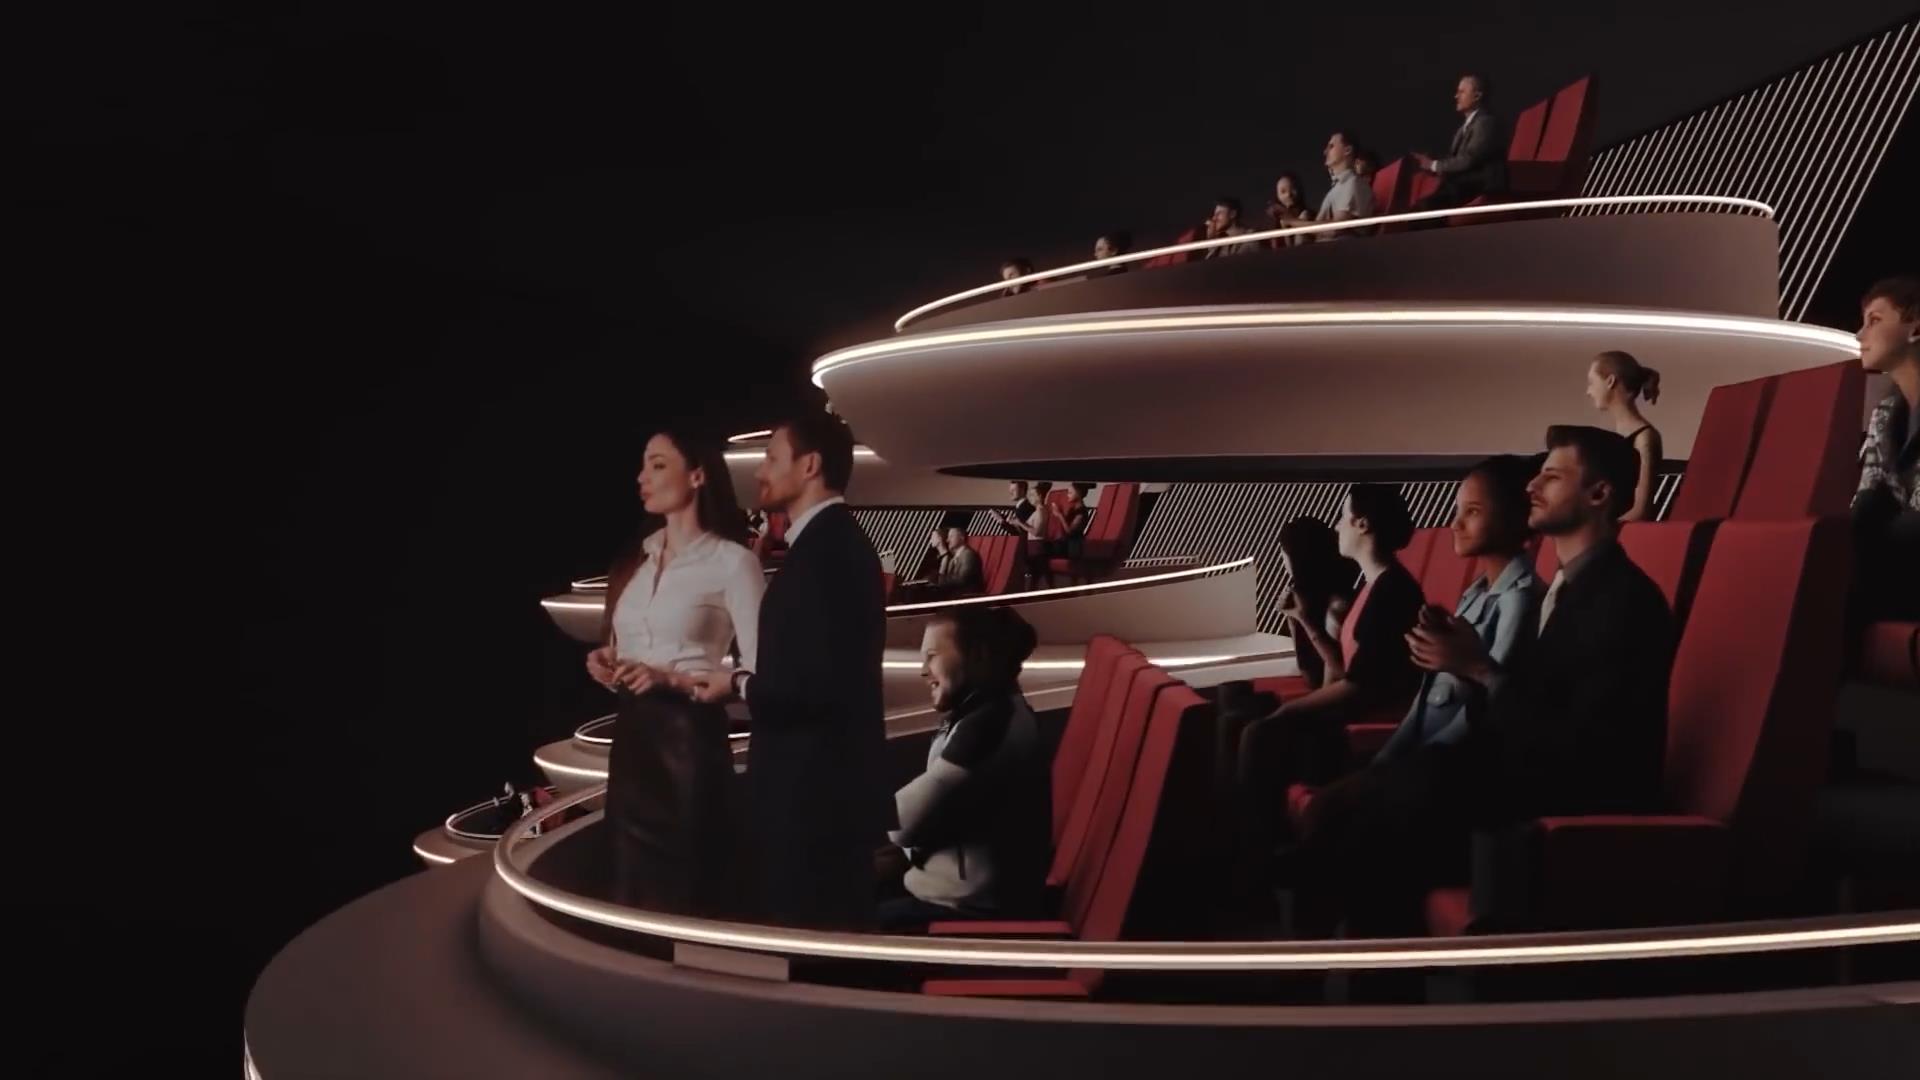 法国新型电影院概念视频曝光 科幻感十足能提供独特体验